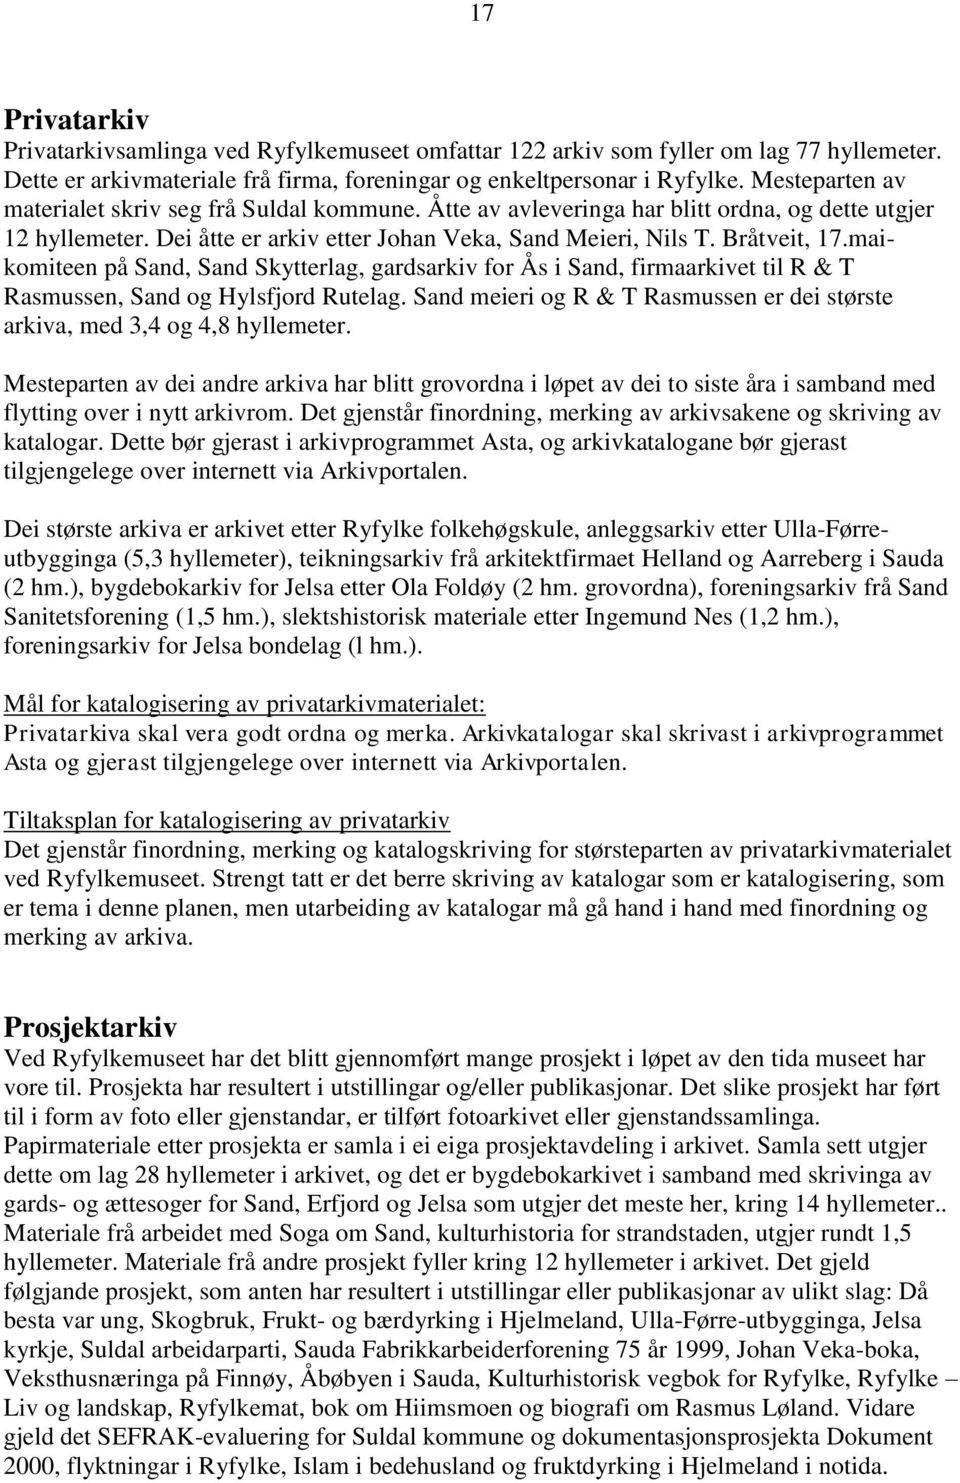 maikomiteen på Sand, Sand Skytterlag, gardsarkiv for Ås i Sand, firmaarkivet til R & T Rasmussen, Sand og Hylsfjord Rutelag.